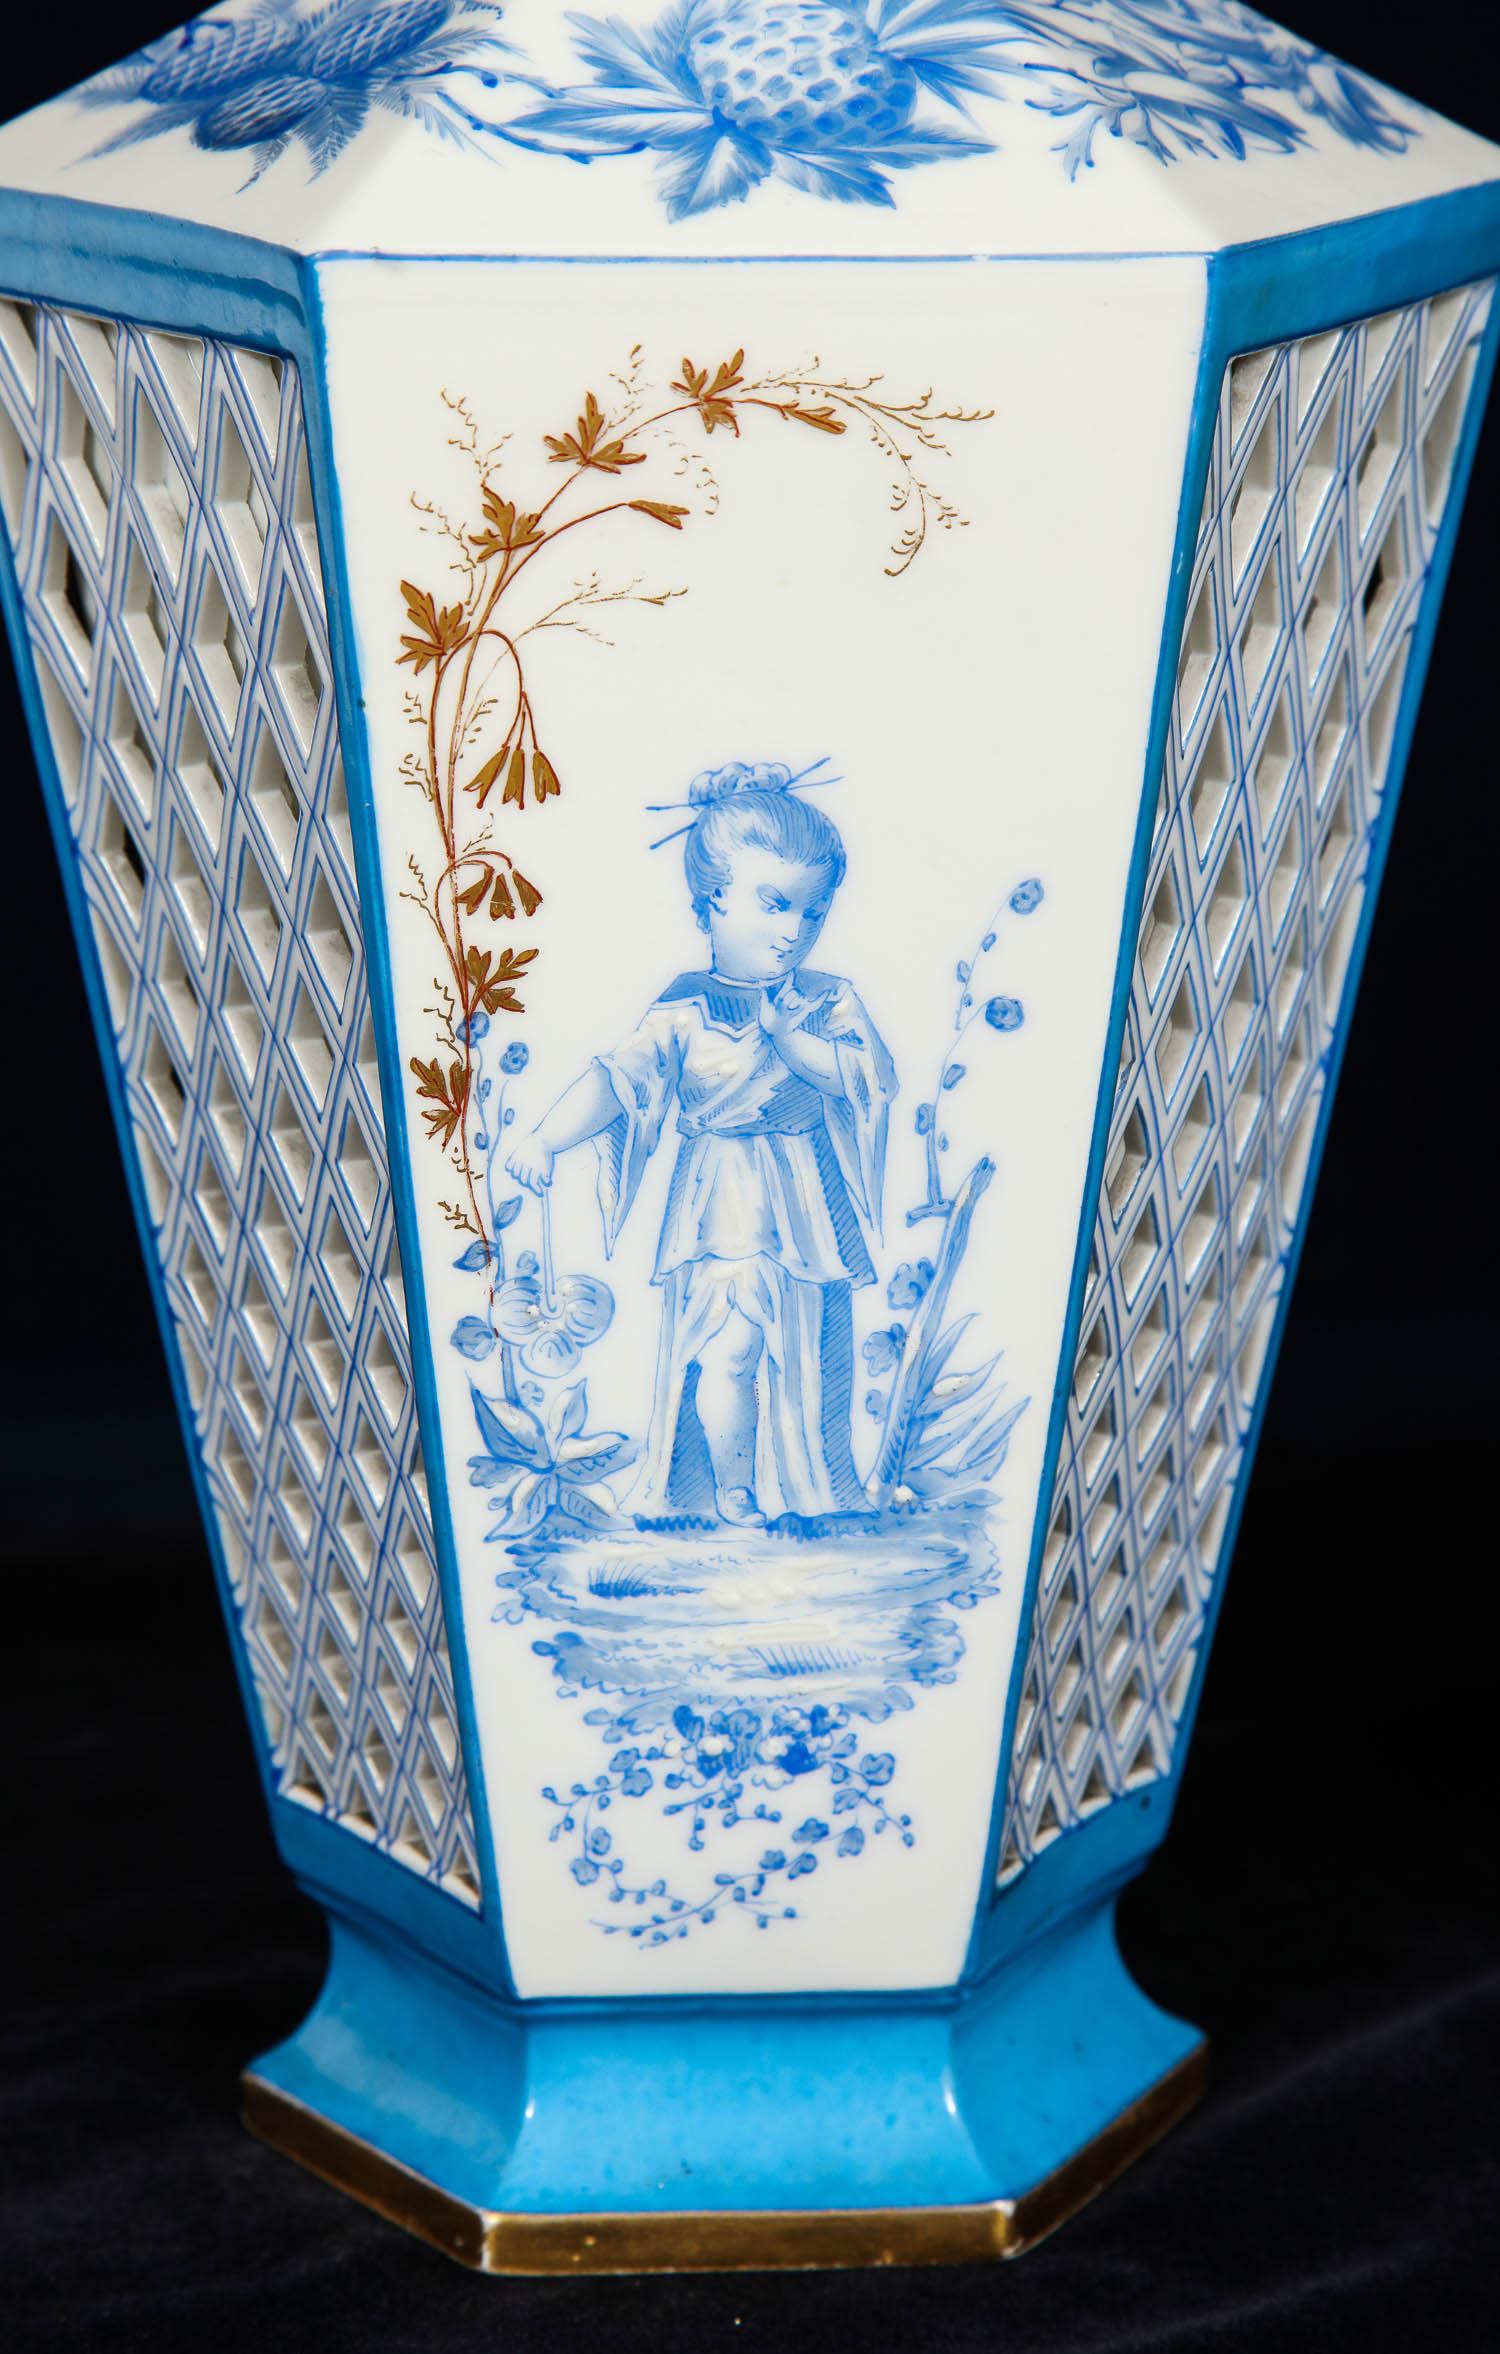 Une belle paire de vases ajourés en porcelaine française de Paris de style chinoiserie bleu et blanc. Chacune d'entre elles est magnifiquement peinte à la main avec des figures de chinoiserie bleu tiffany représentant un garçon et une fille dans un